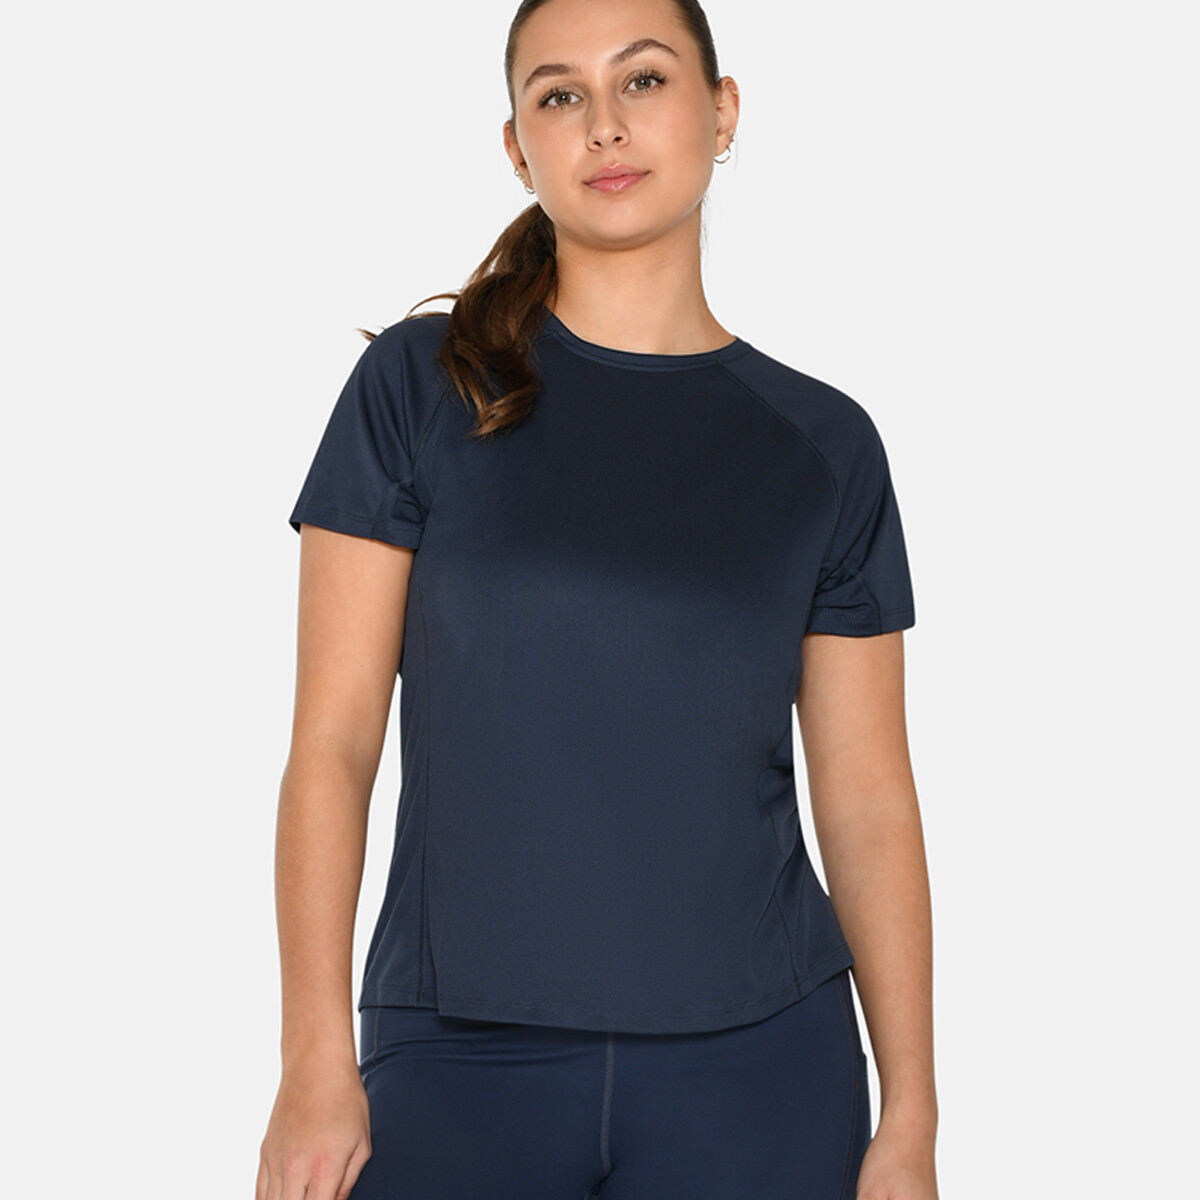 Se Zebdia Women Sports T-shirt, Farve: Blå, Størrelse: XXL, Dame hos Netlingeri.dk